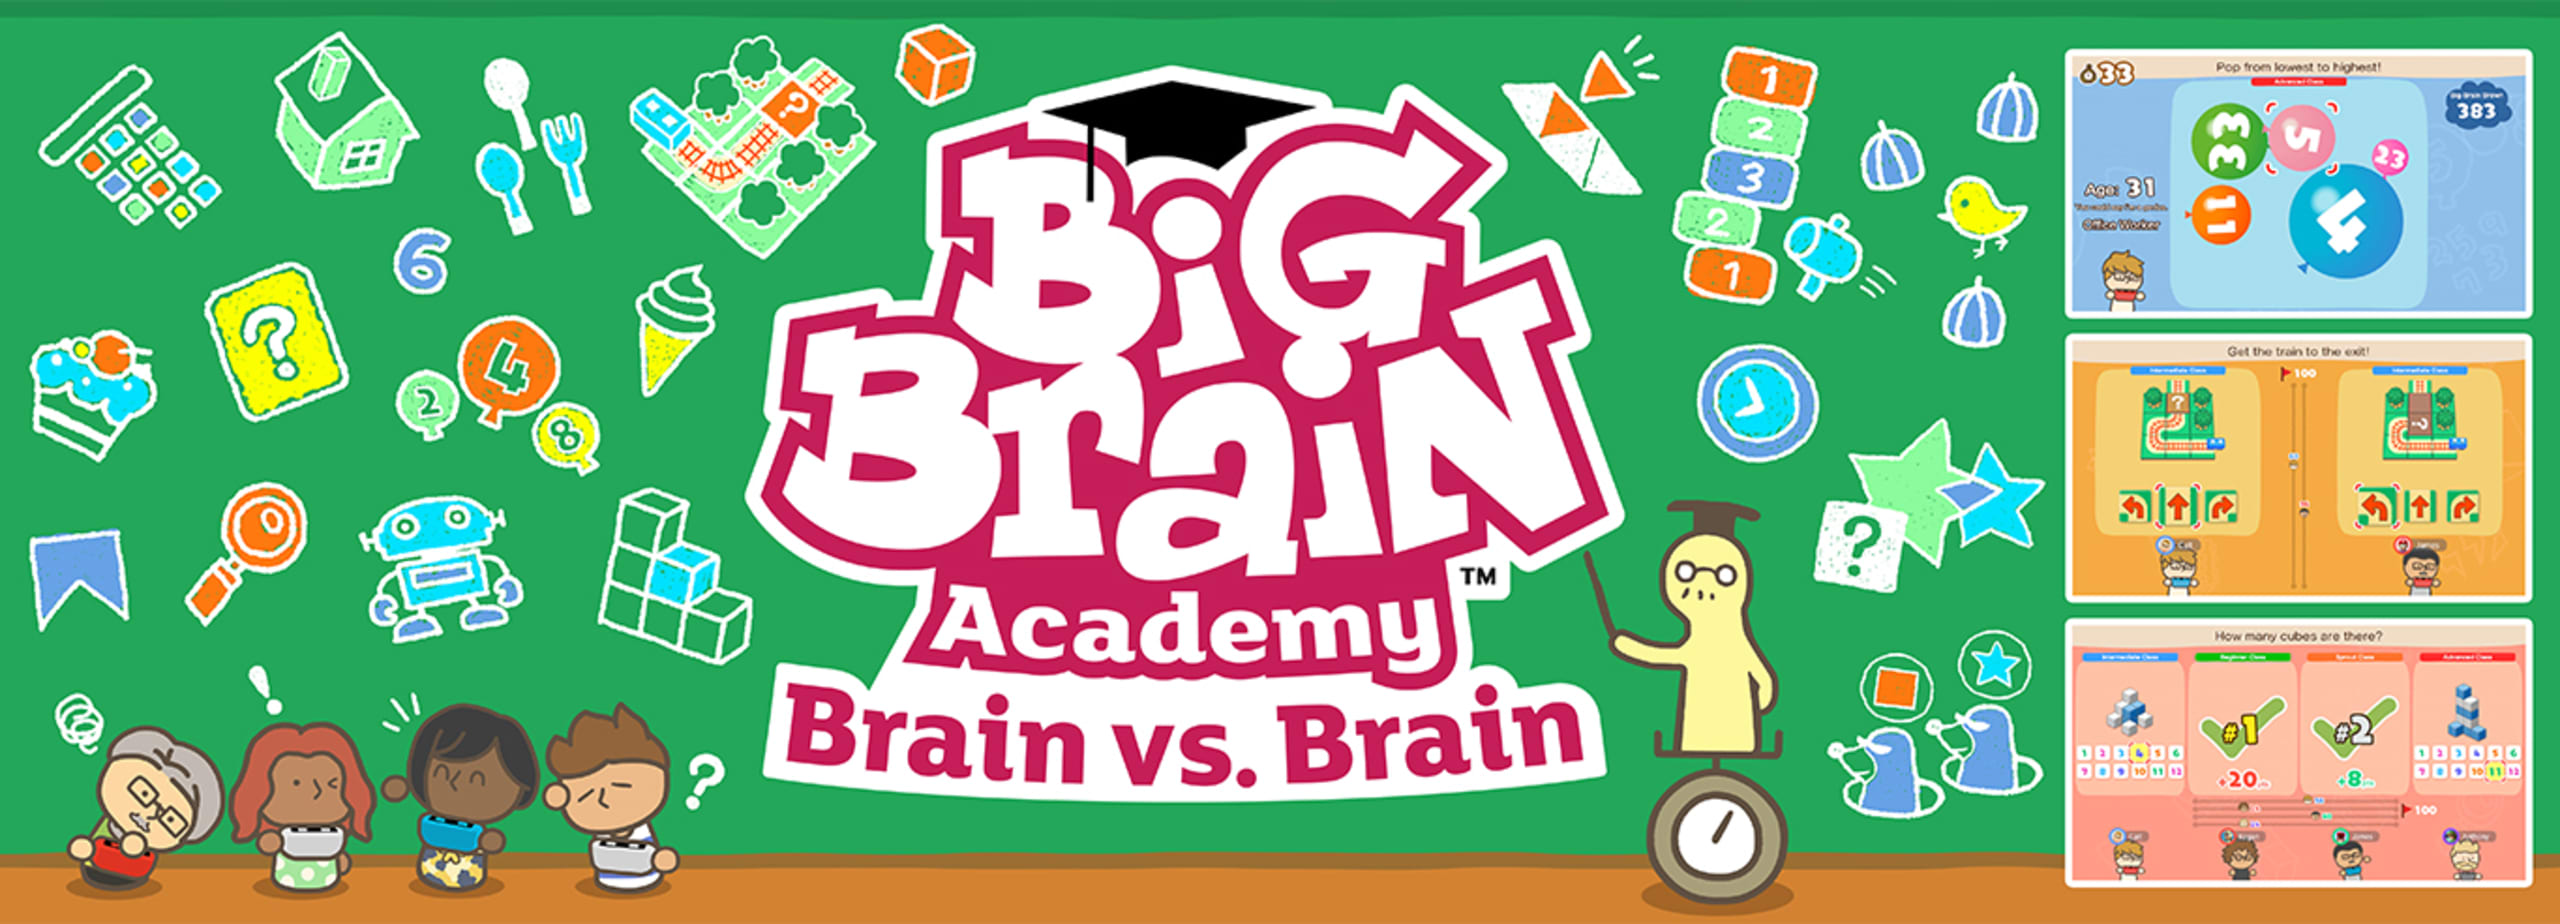 Big Brain Academy: Brain vs. Brain - Available now